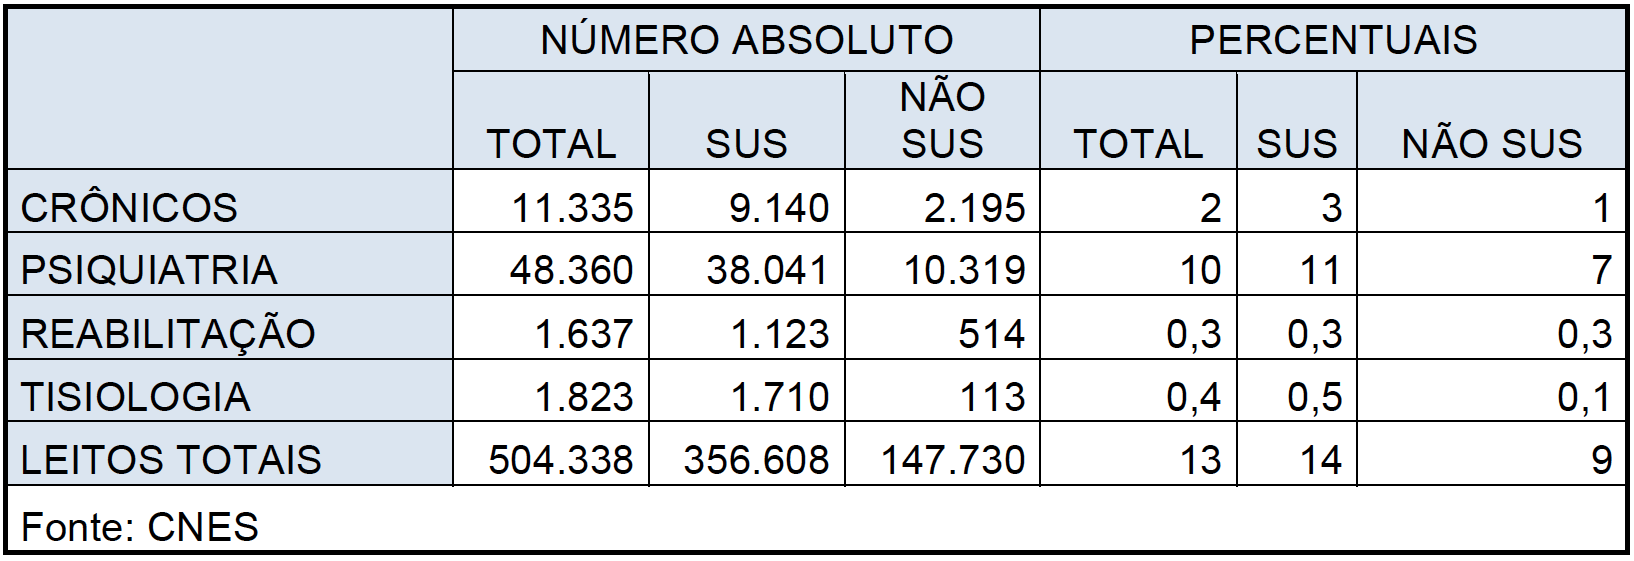 Quadro 5 – Números absolutos e percentuais de leitos crônicos, psiquiatria, reabilitação e tisiologia, agrupados como “outros” no CNES, Brasil, 2011. 